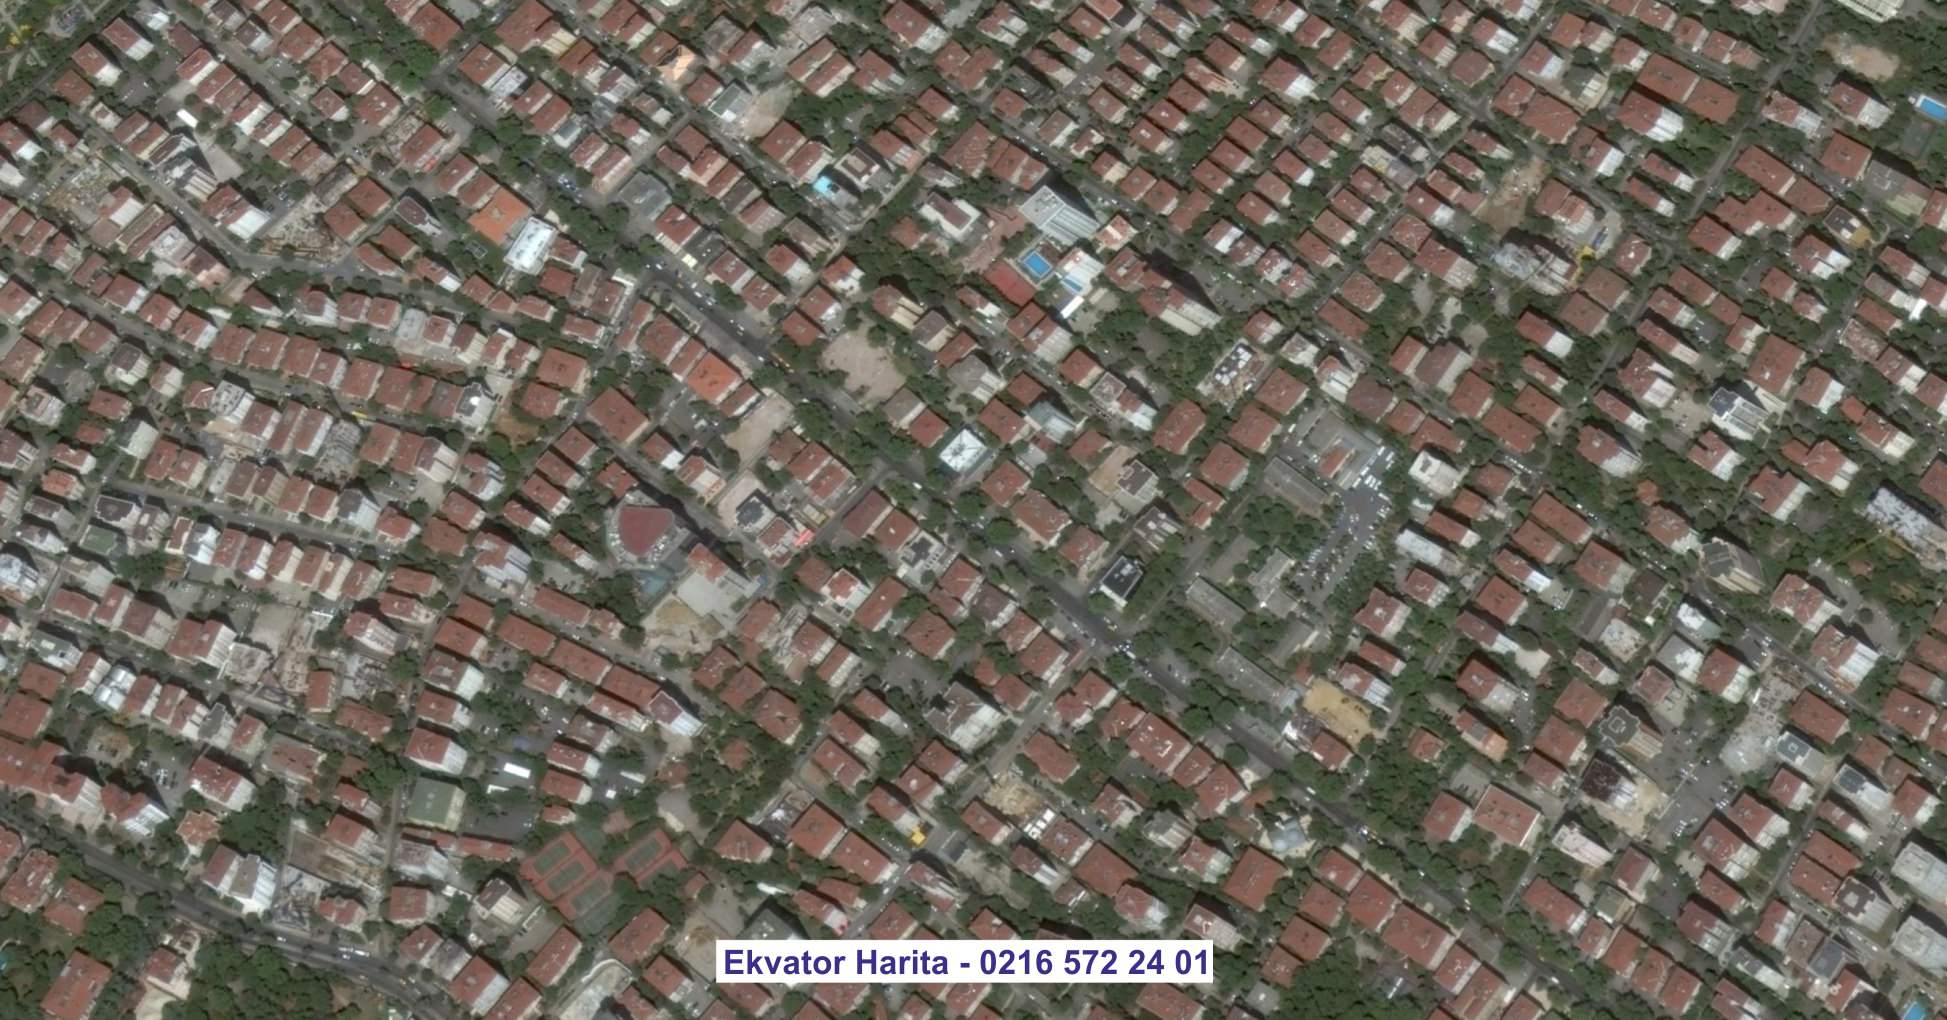 Kemer Uydu Görüntüsü Örnek Fotoğrafı